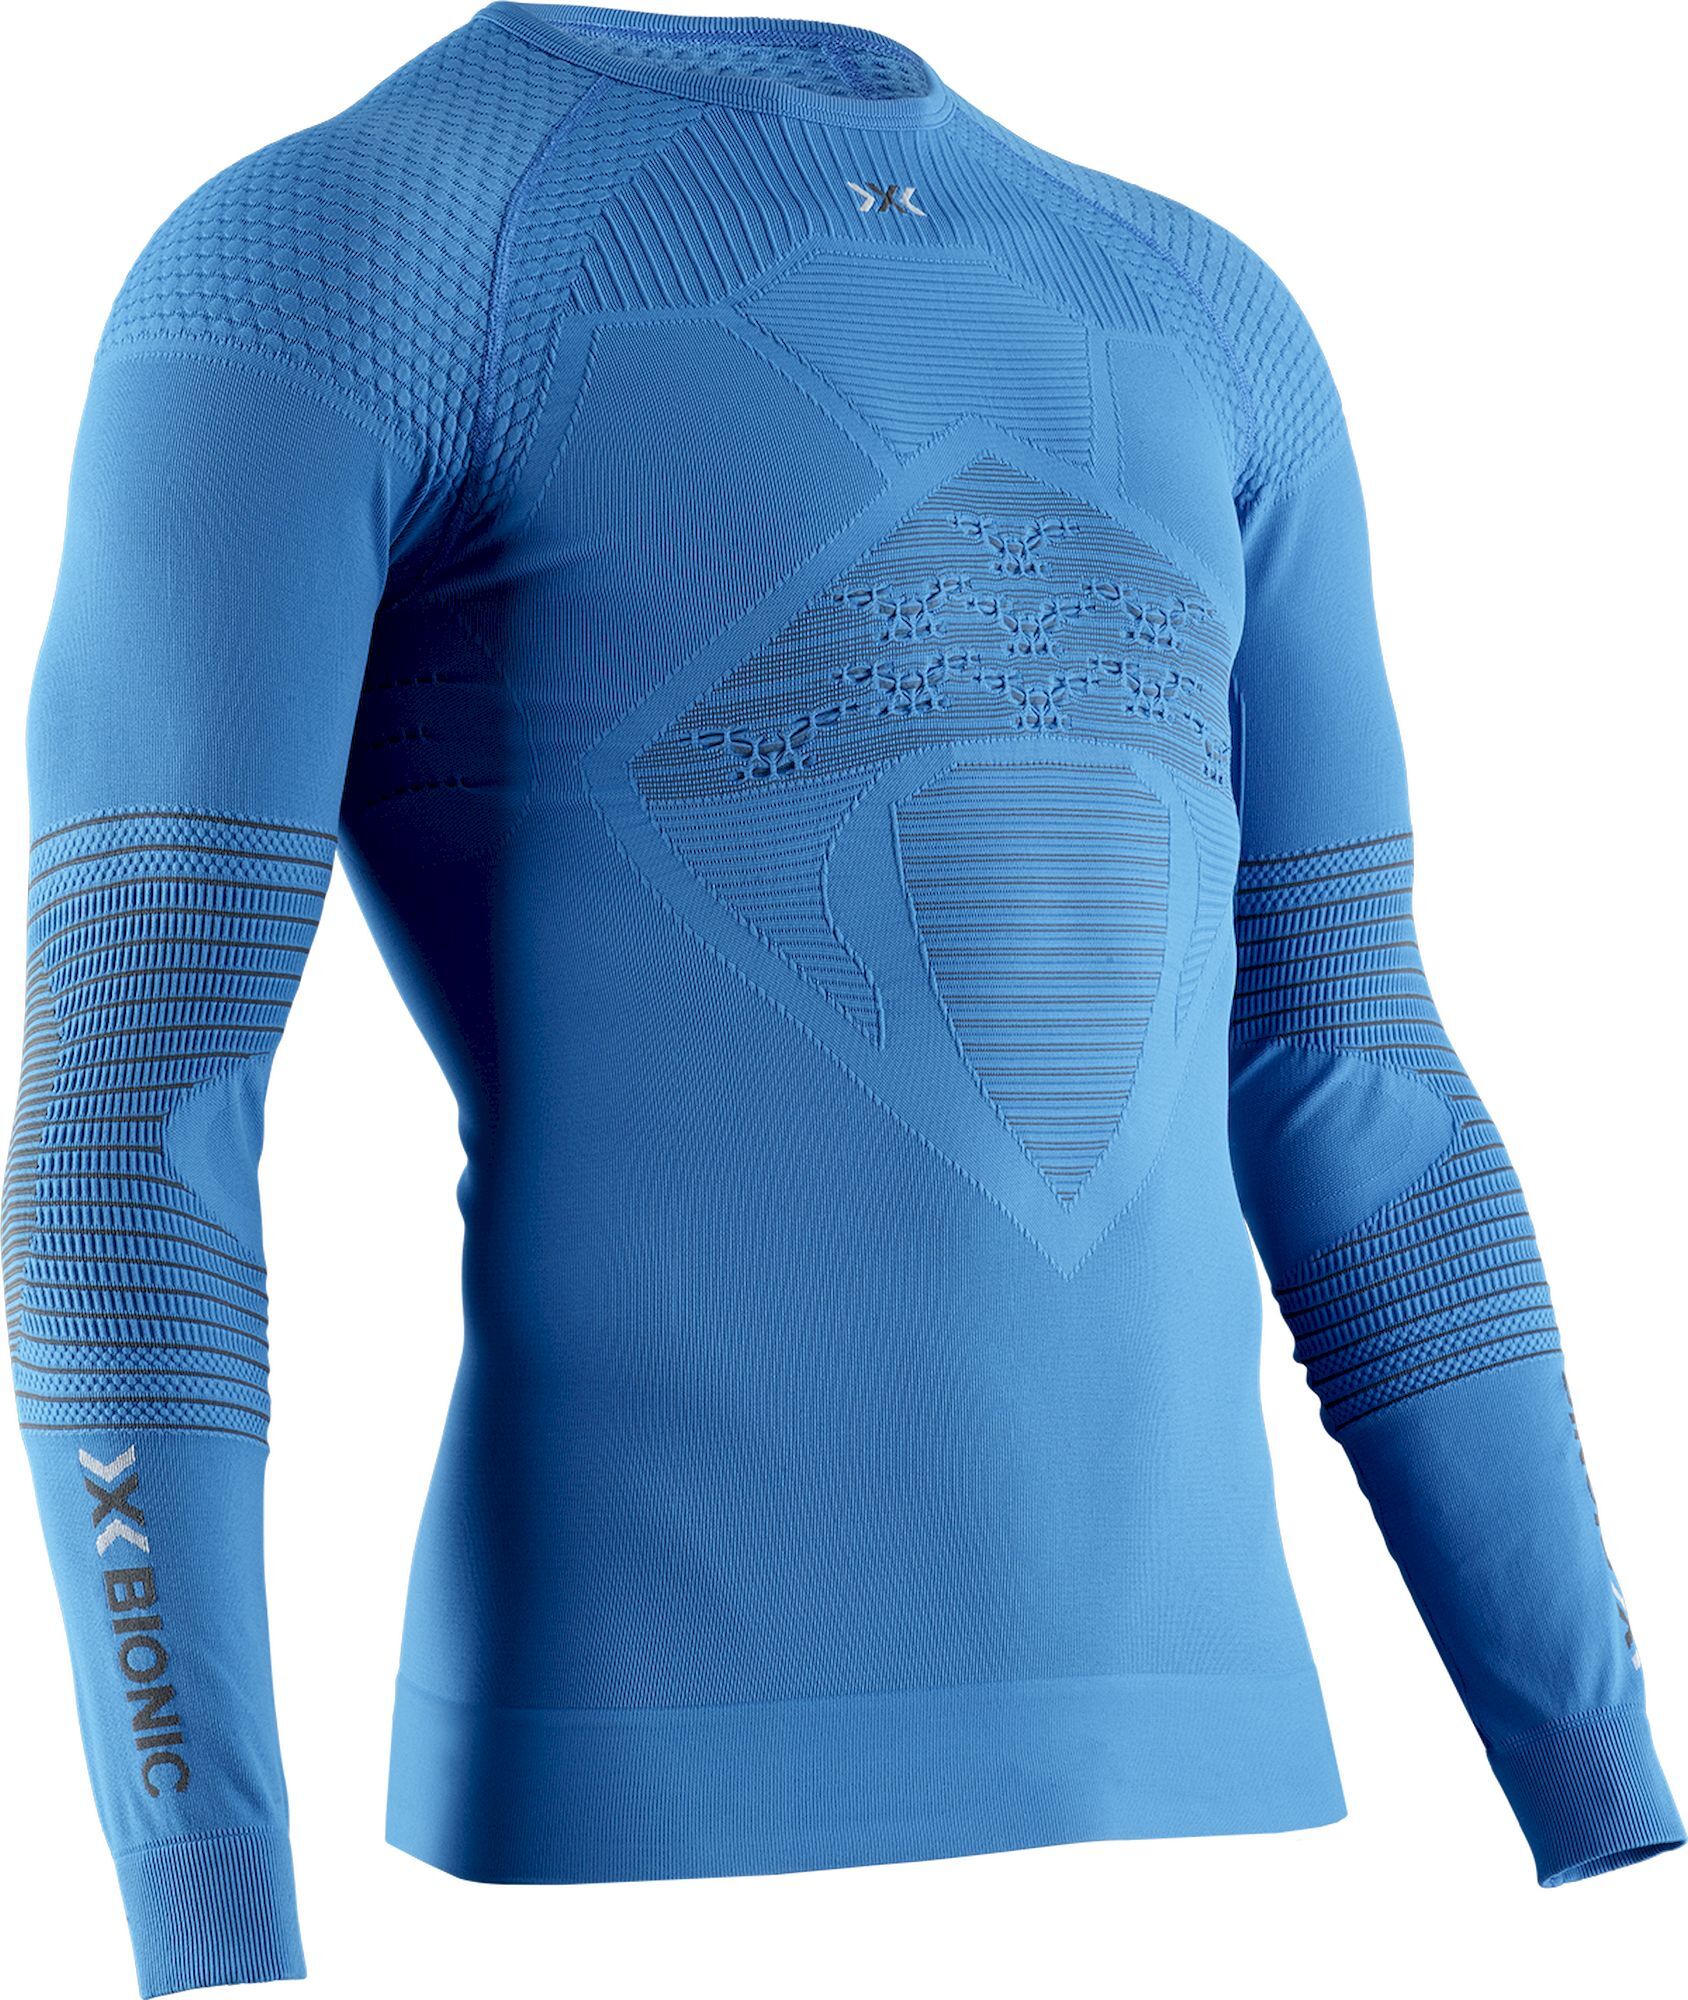 X-Bionic Energizer 4.0 Shirt Long Sleeve - Synthetisch ondergoed - Heren